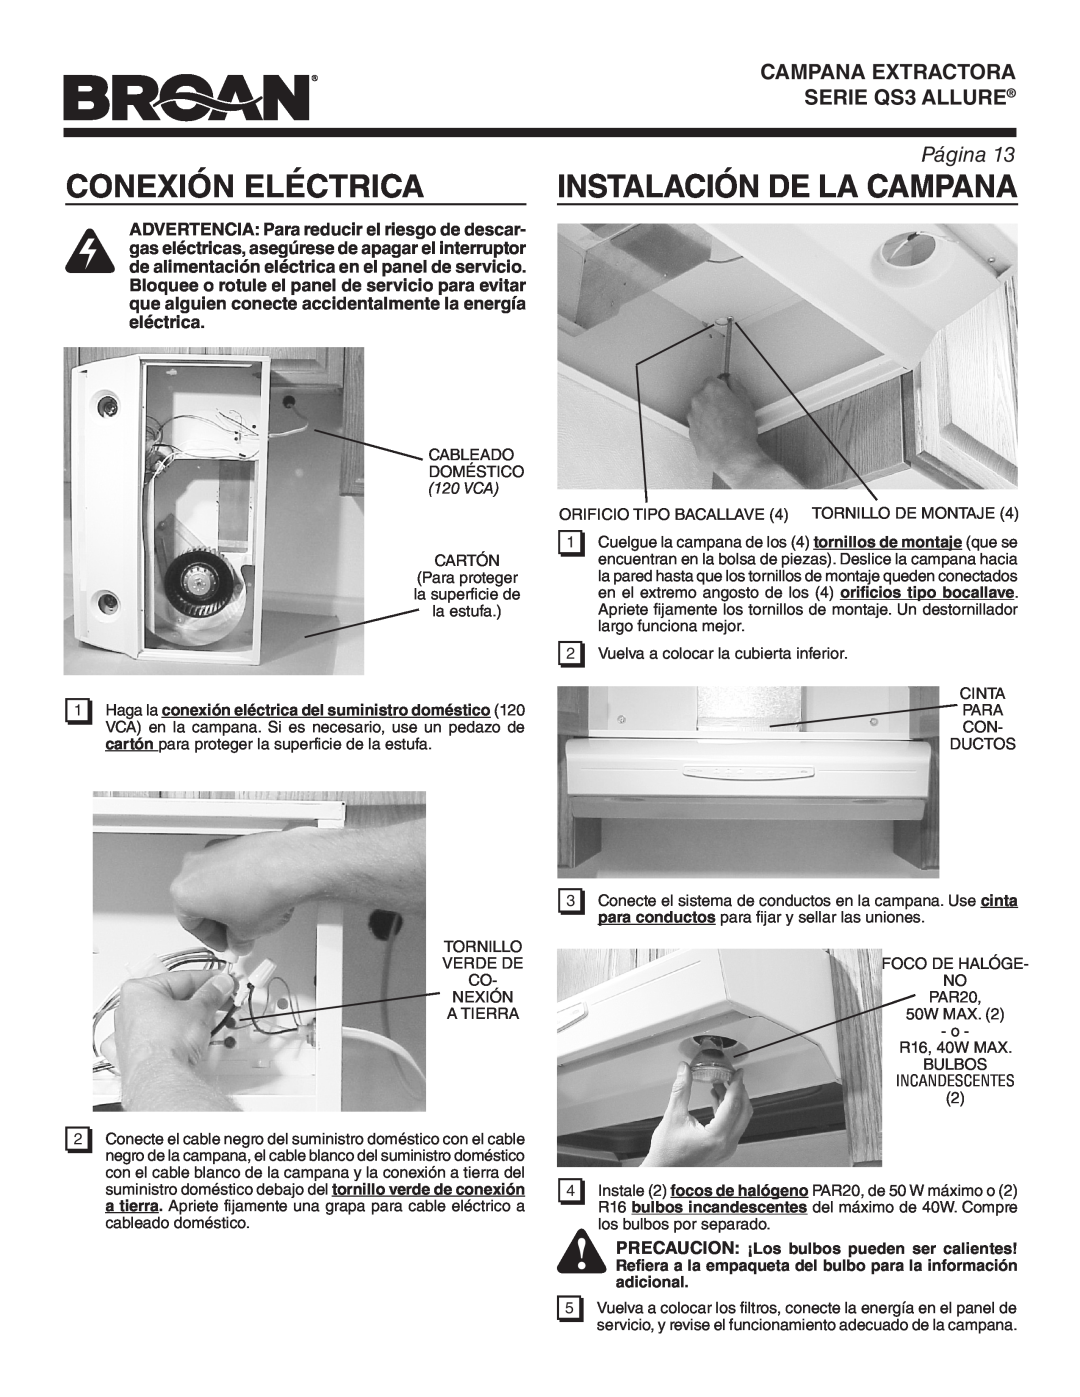 Broan QS342SS warranty Conexión Eléctrica, Instalación De La Campana, Campana Extractora, SERIE QS3 ALLURE, Página 